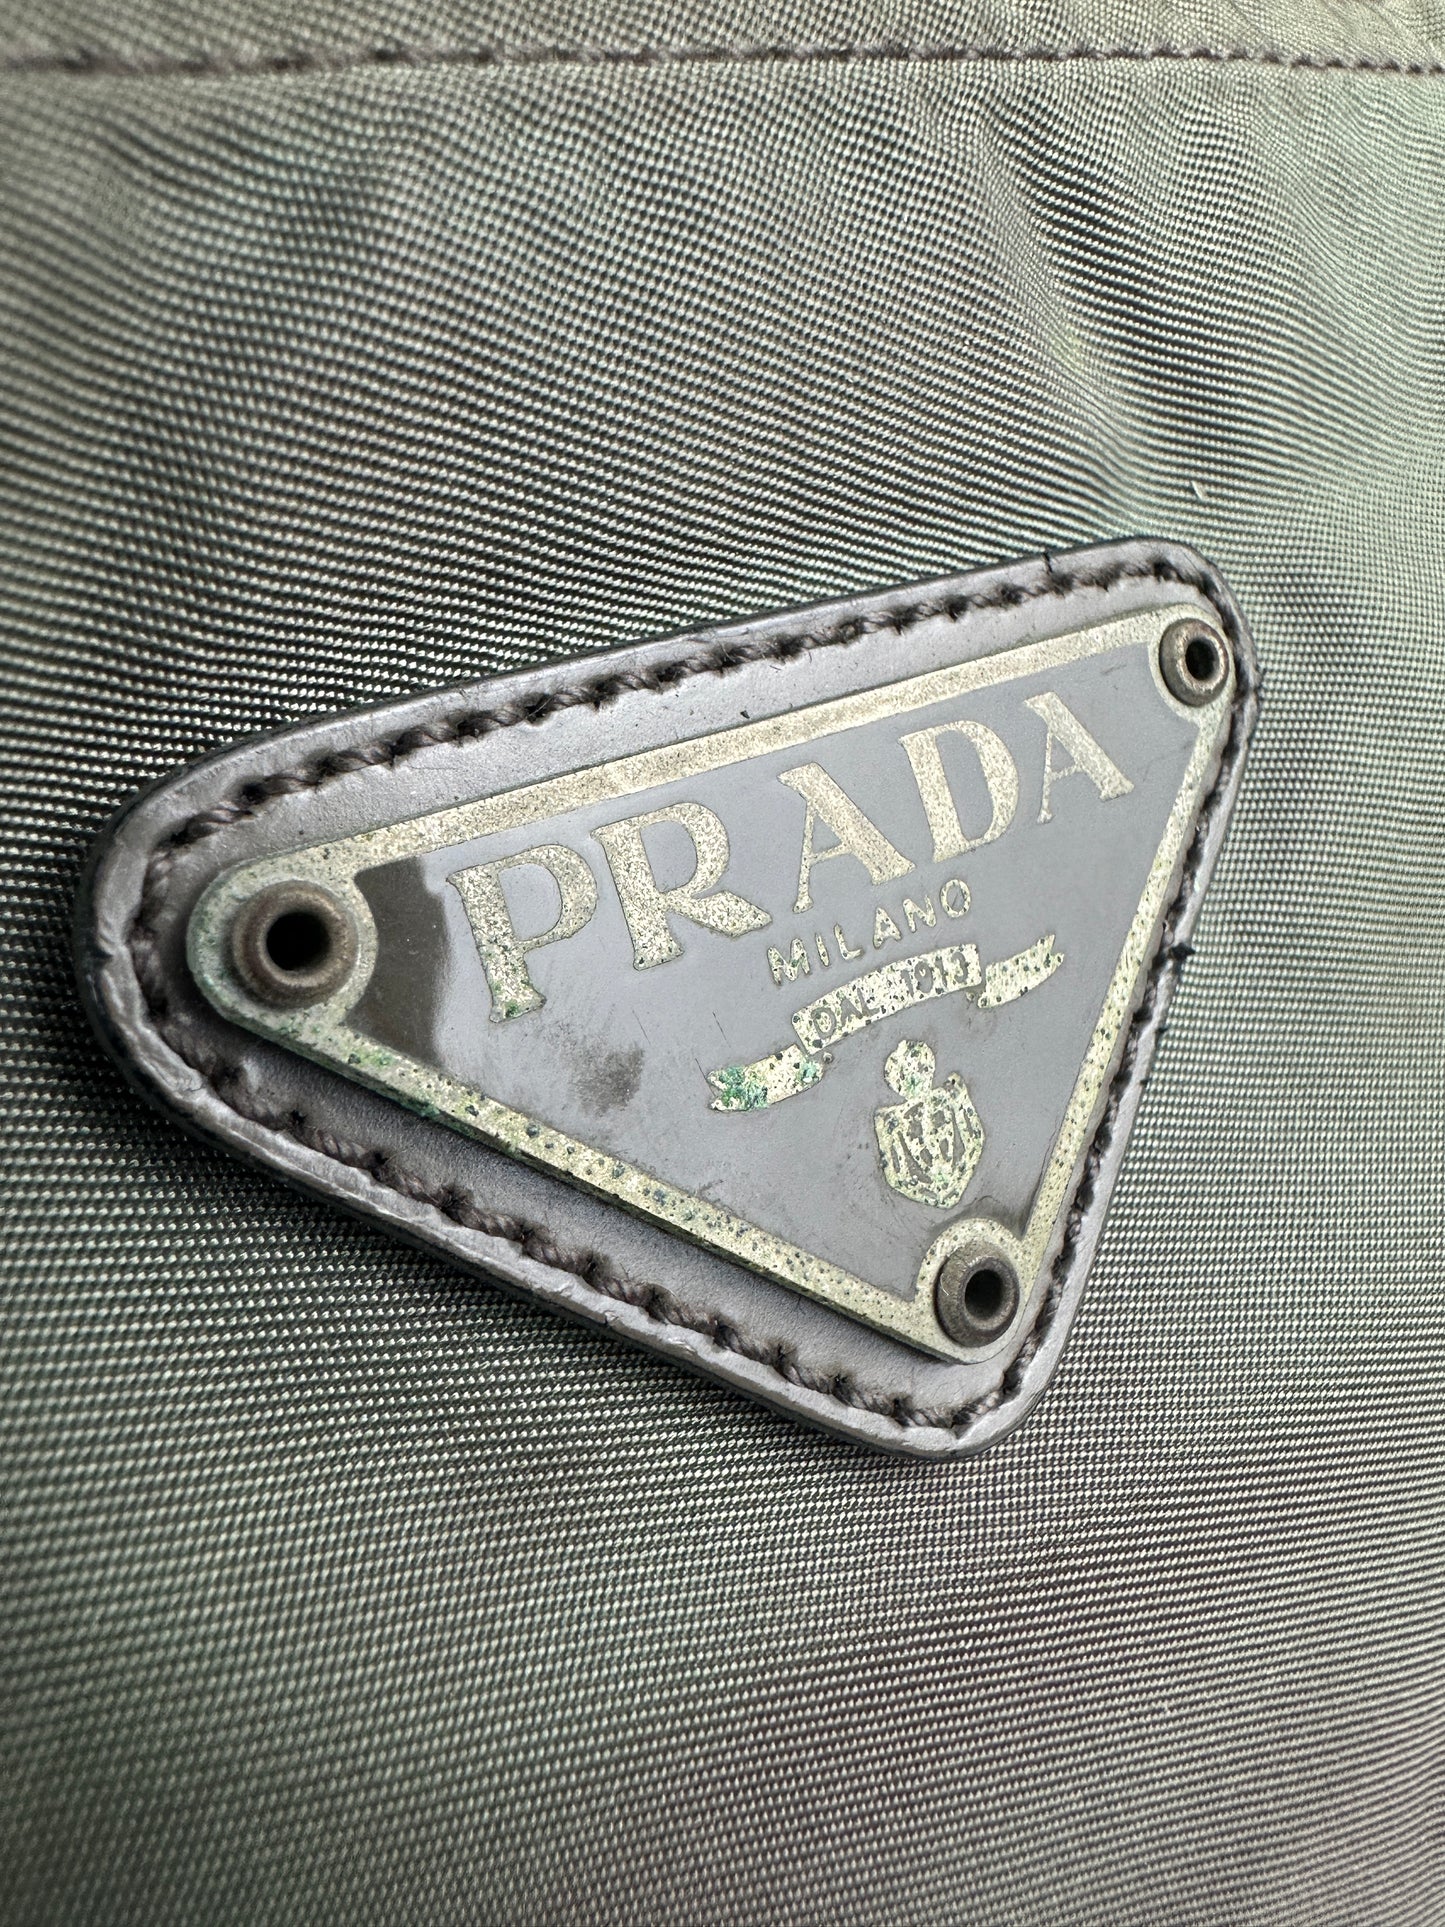 Vintage Prada Nylon Handtasche grün